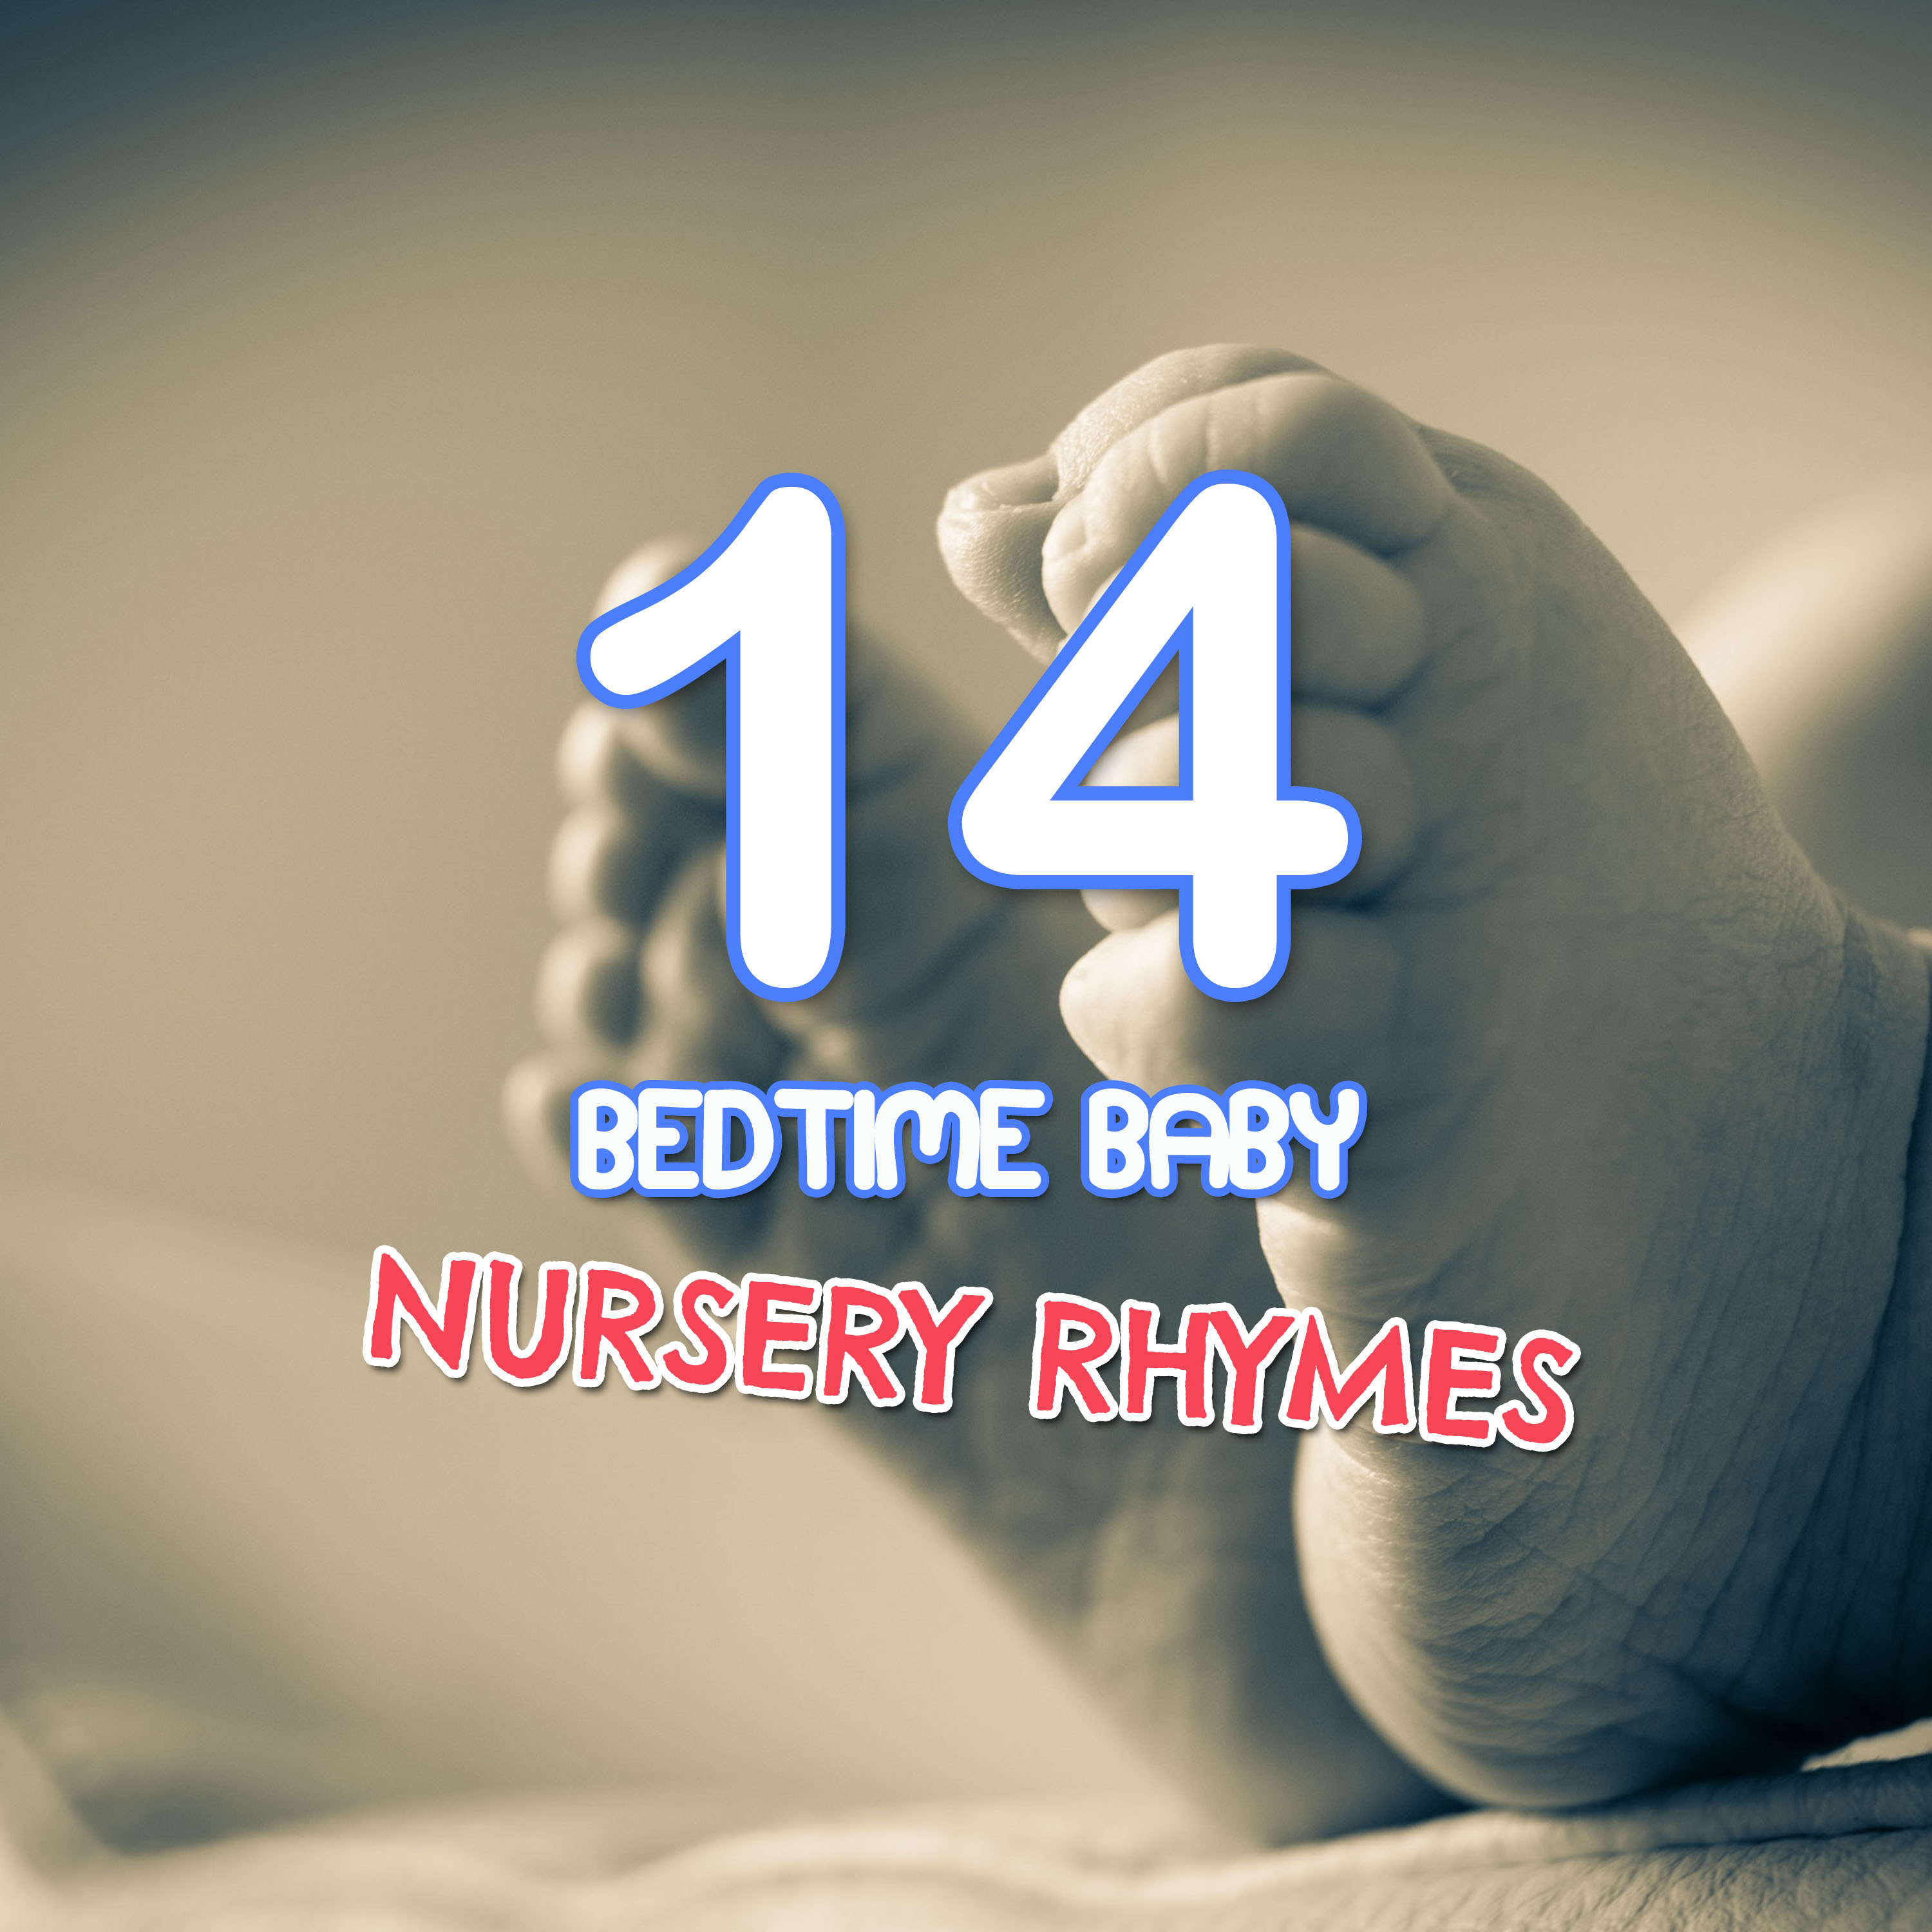 14 Bedtime Baby Nursery Rhymes